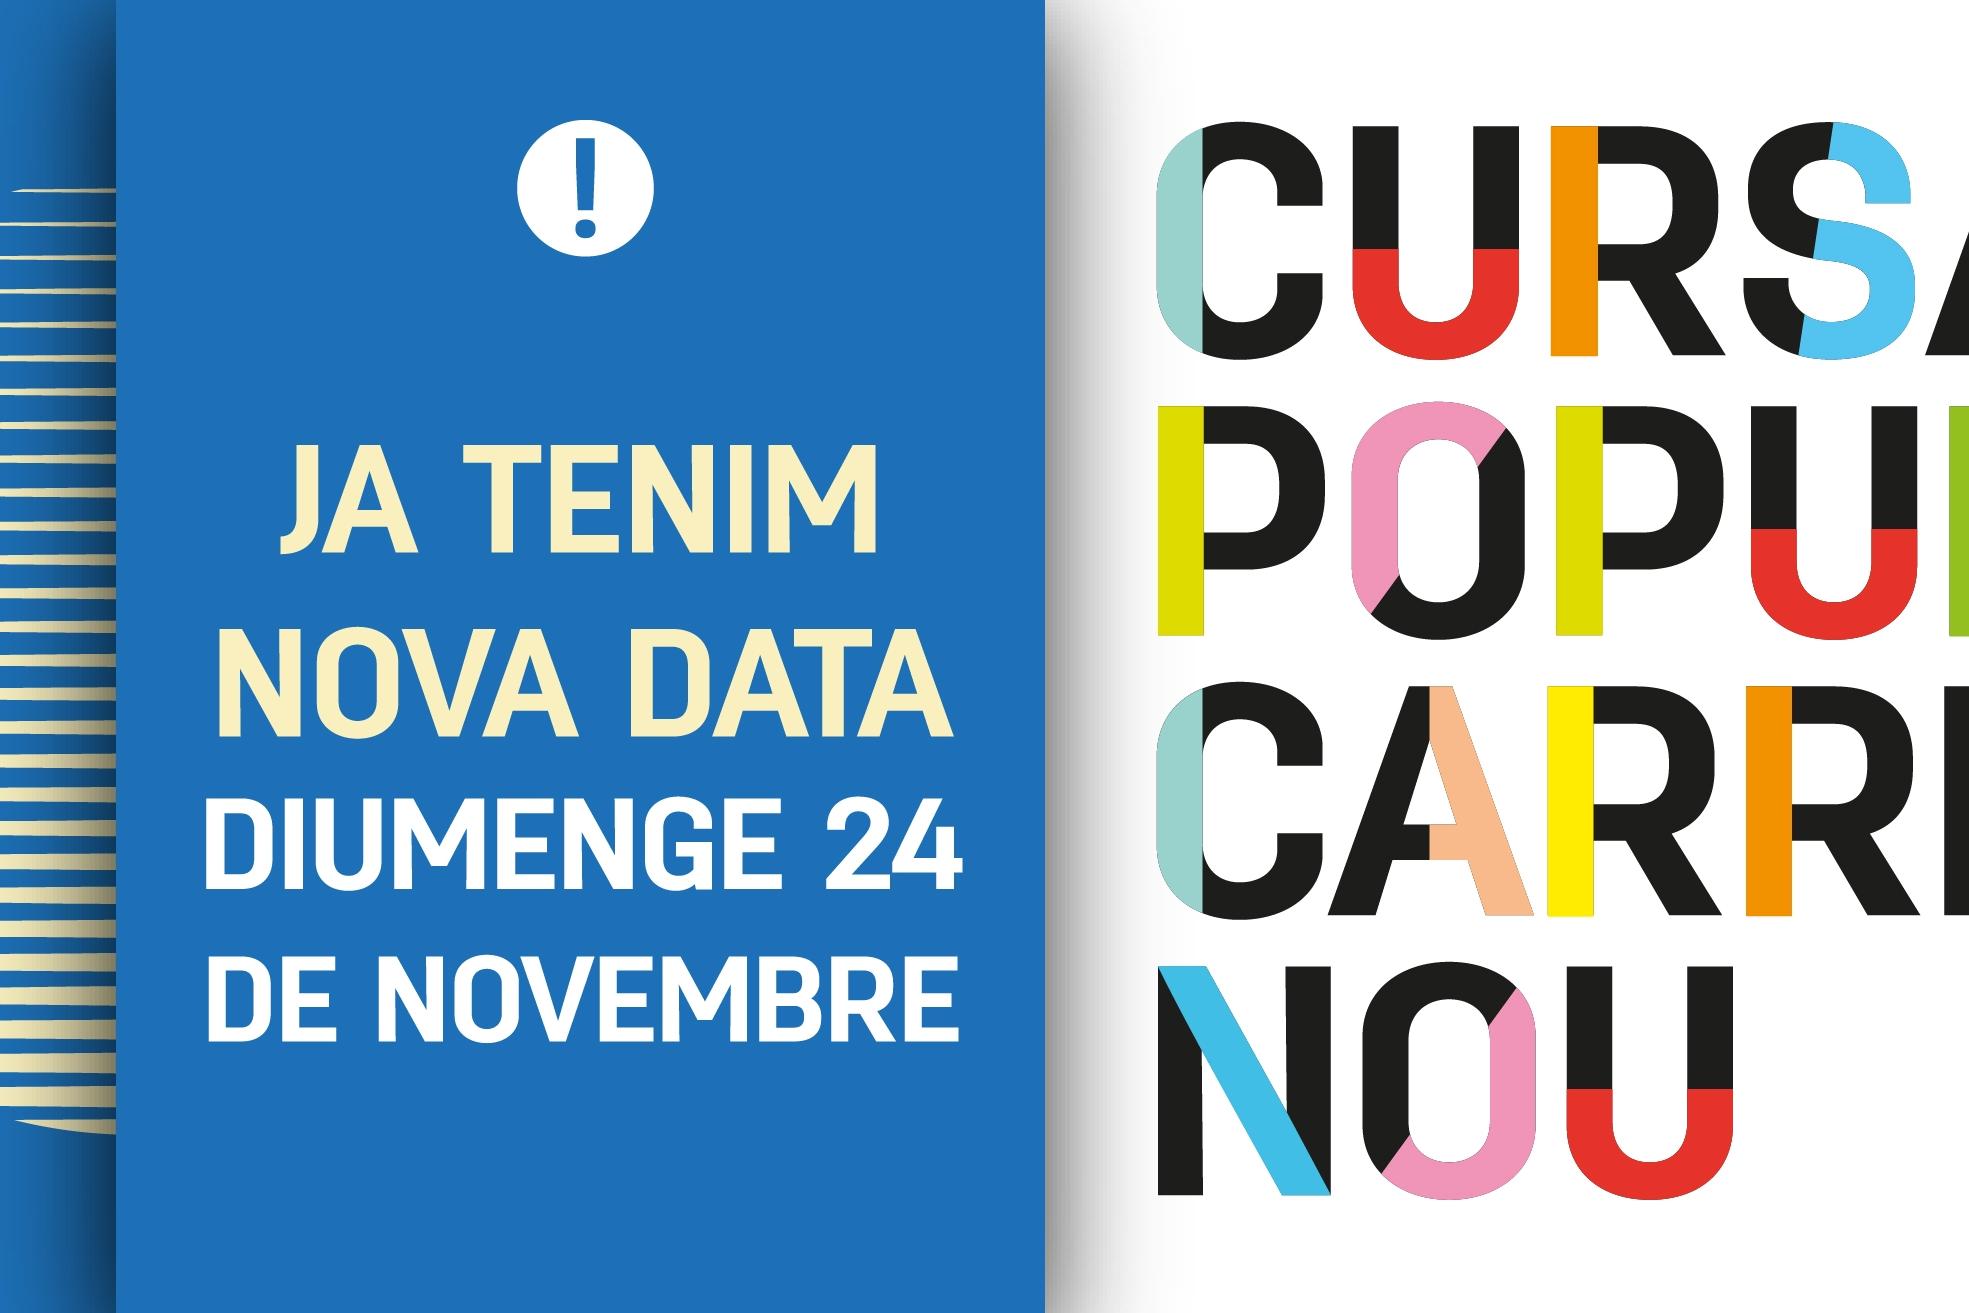 La Cursa Popular del Carrer Nou 2019 ja té nova data: diumenge 24 de novembre